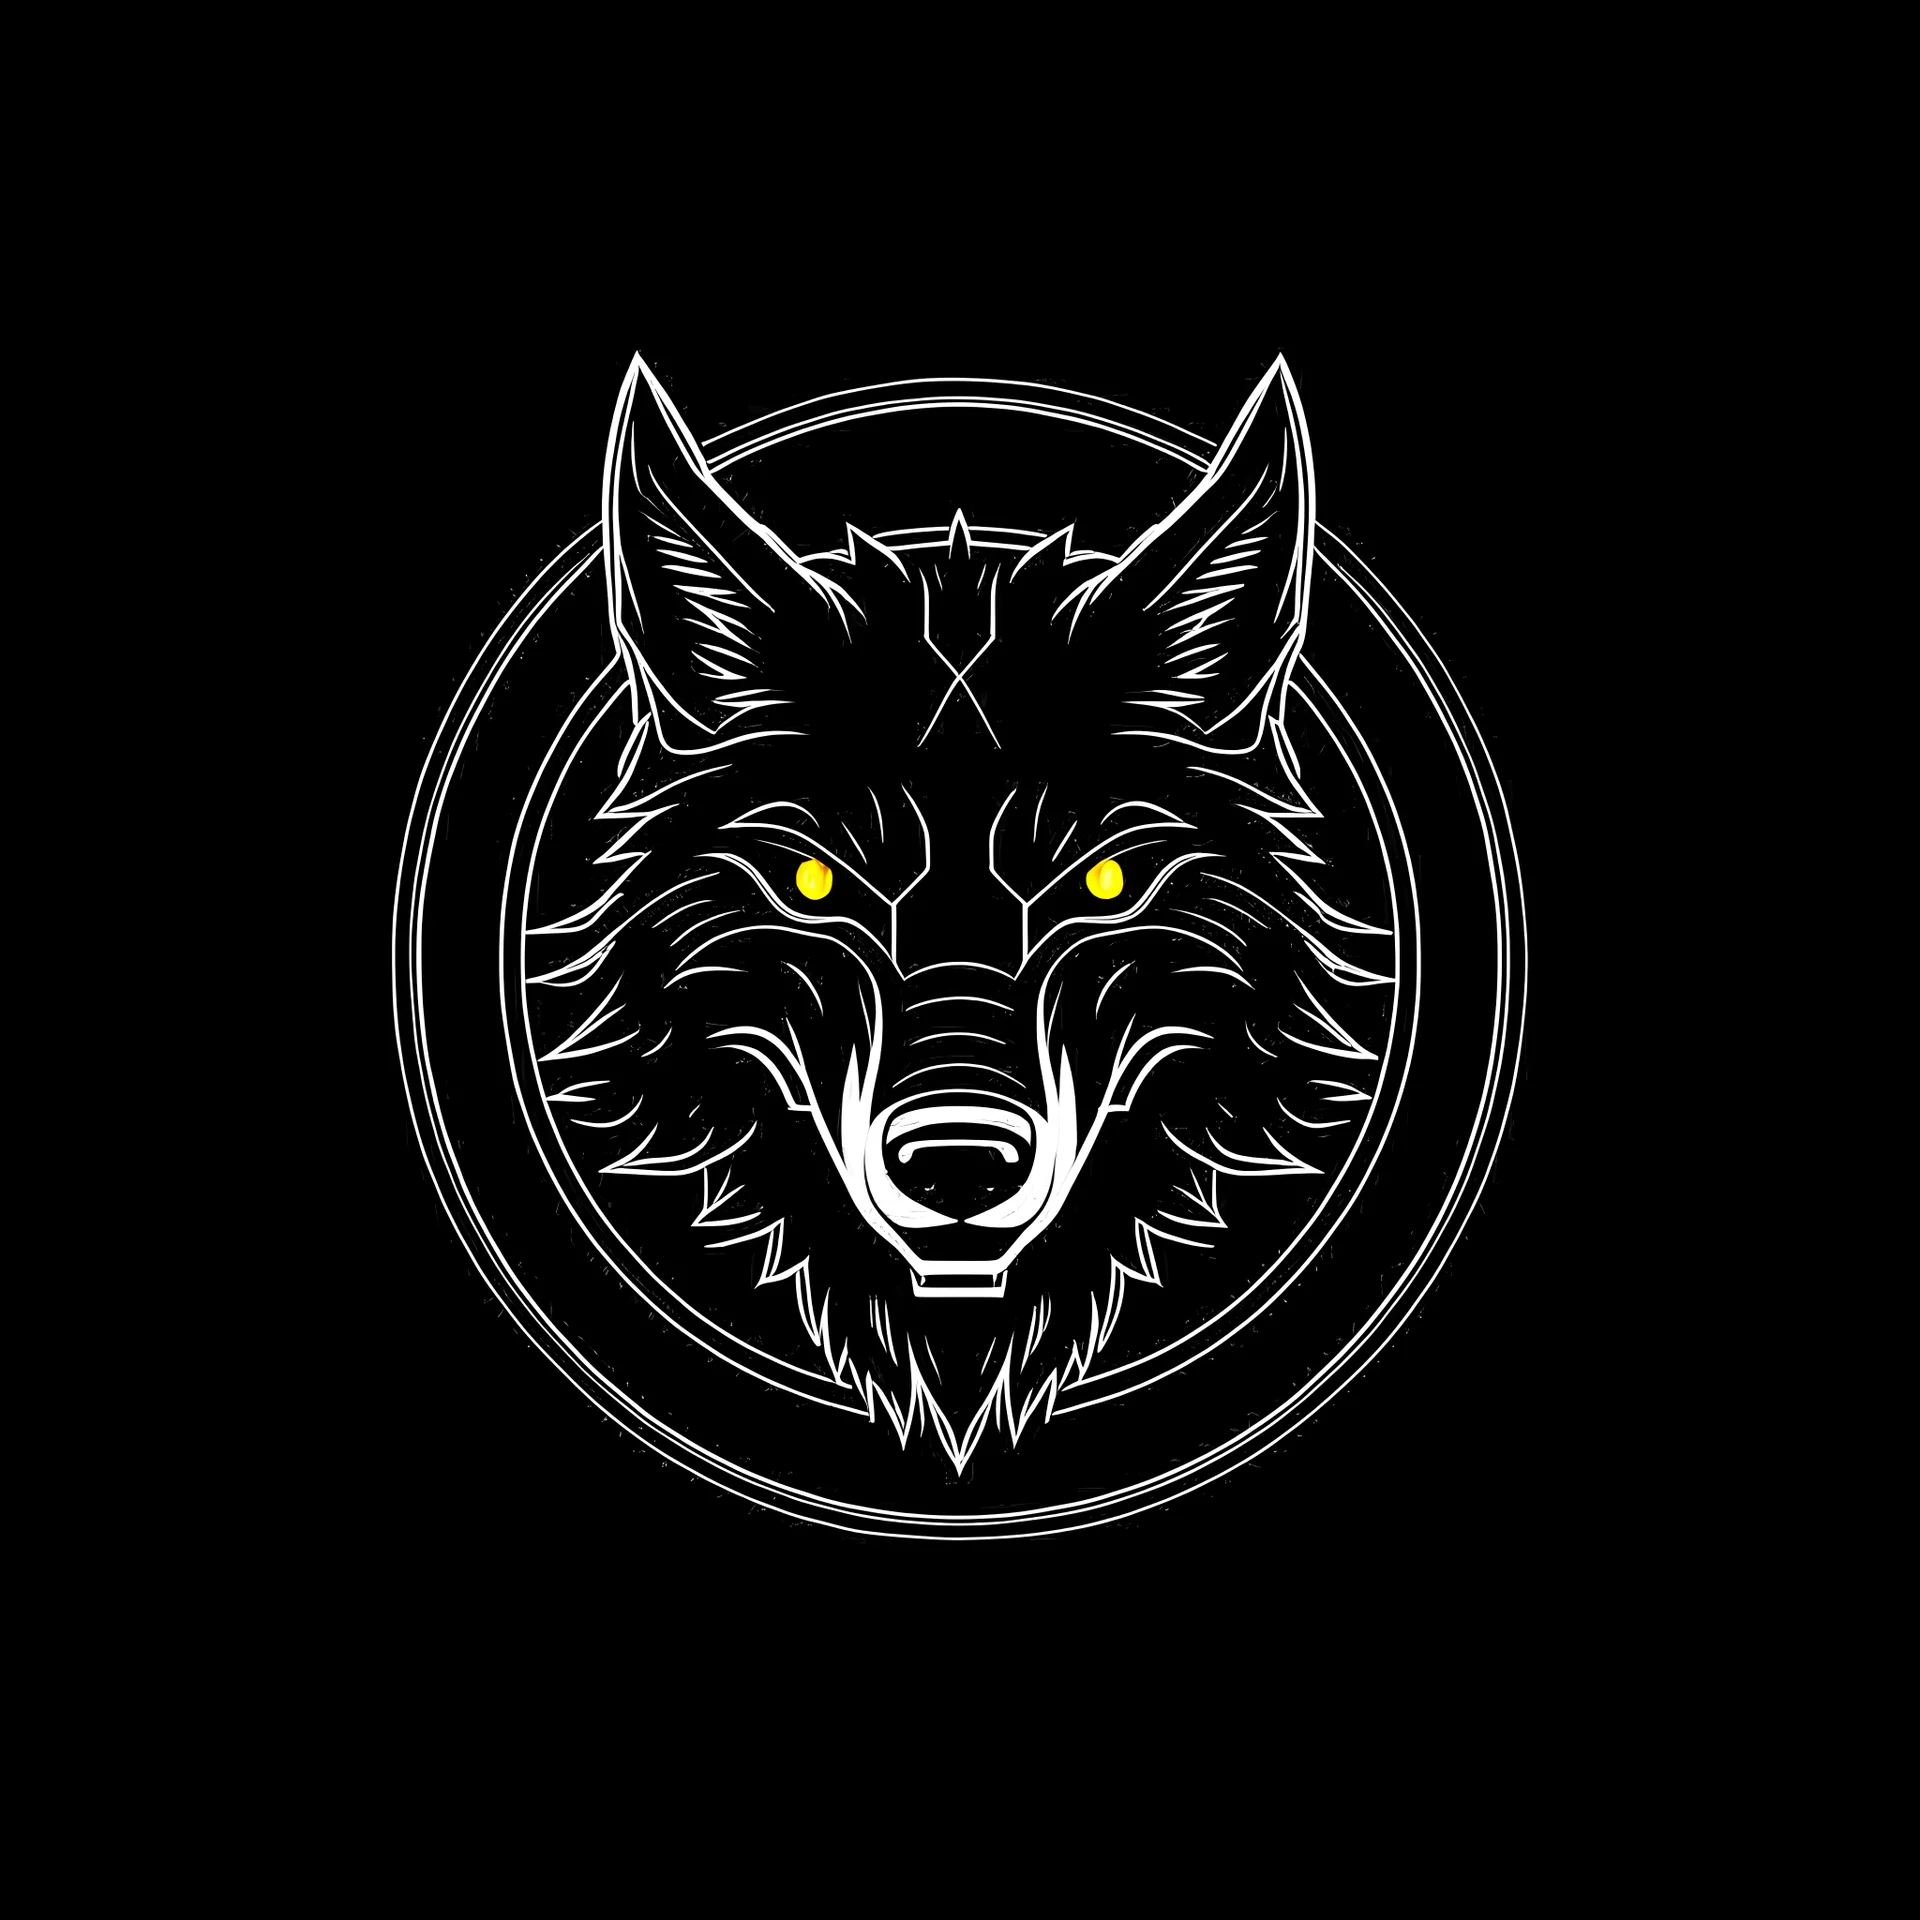 Wolf logo by Stefan Ivankovic on Dribbble